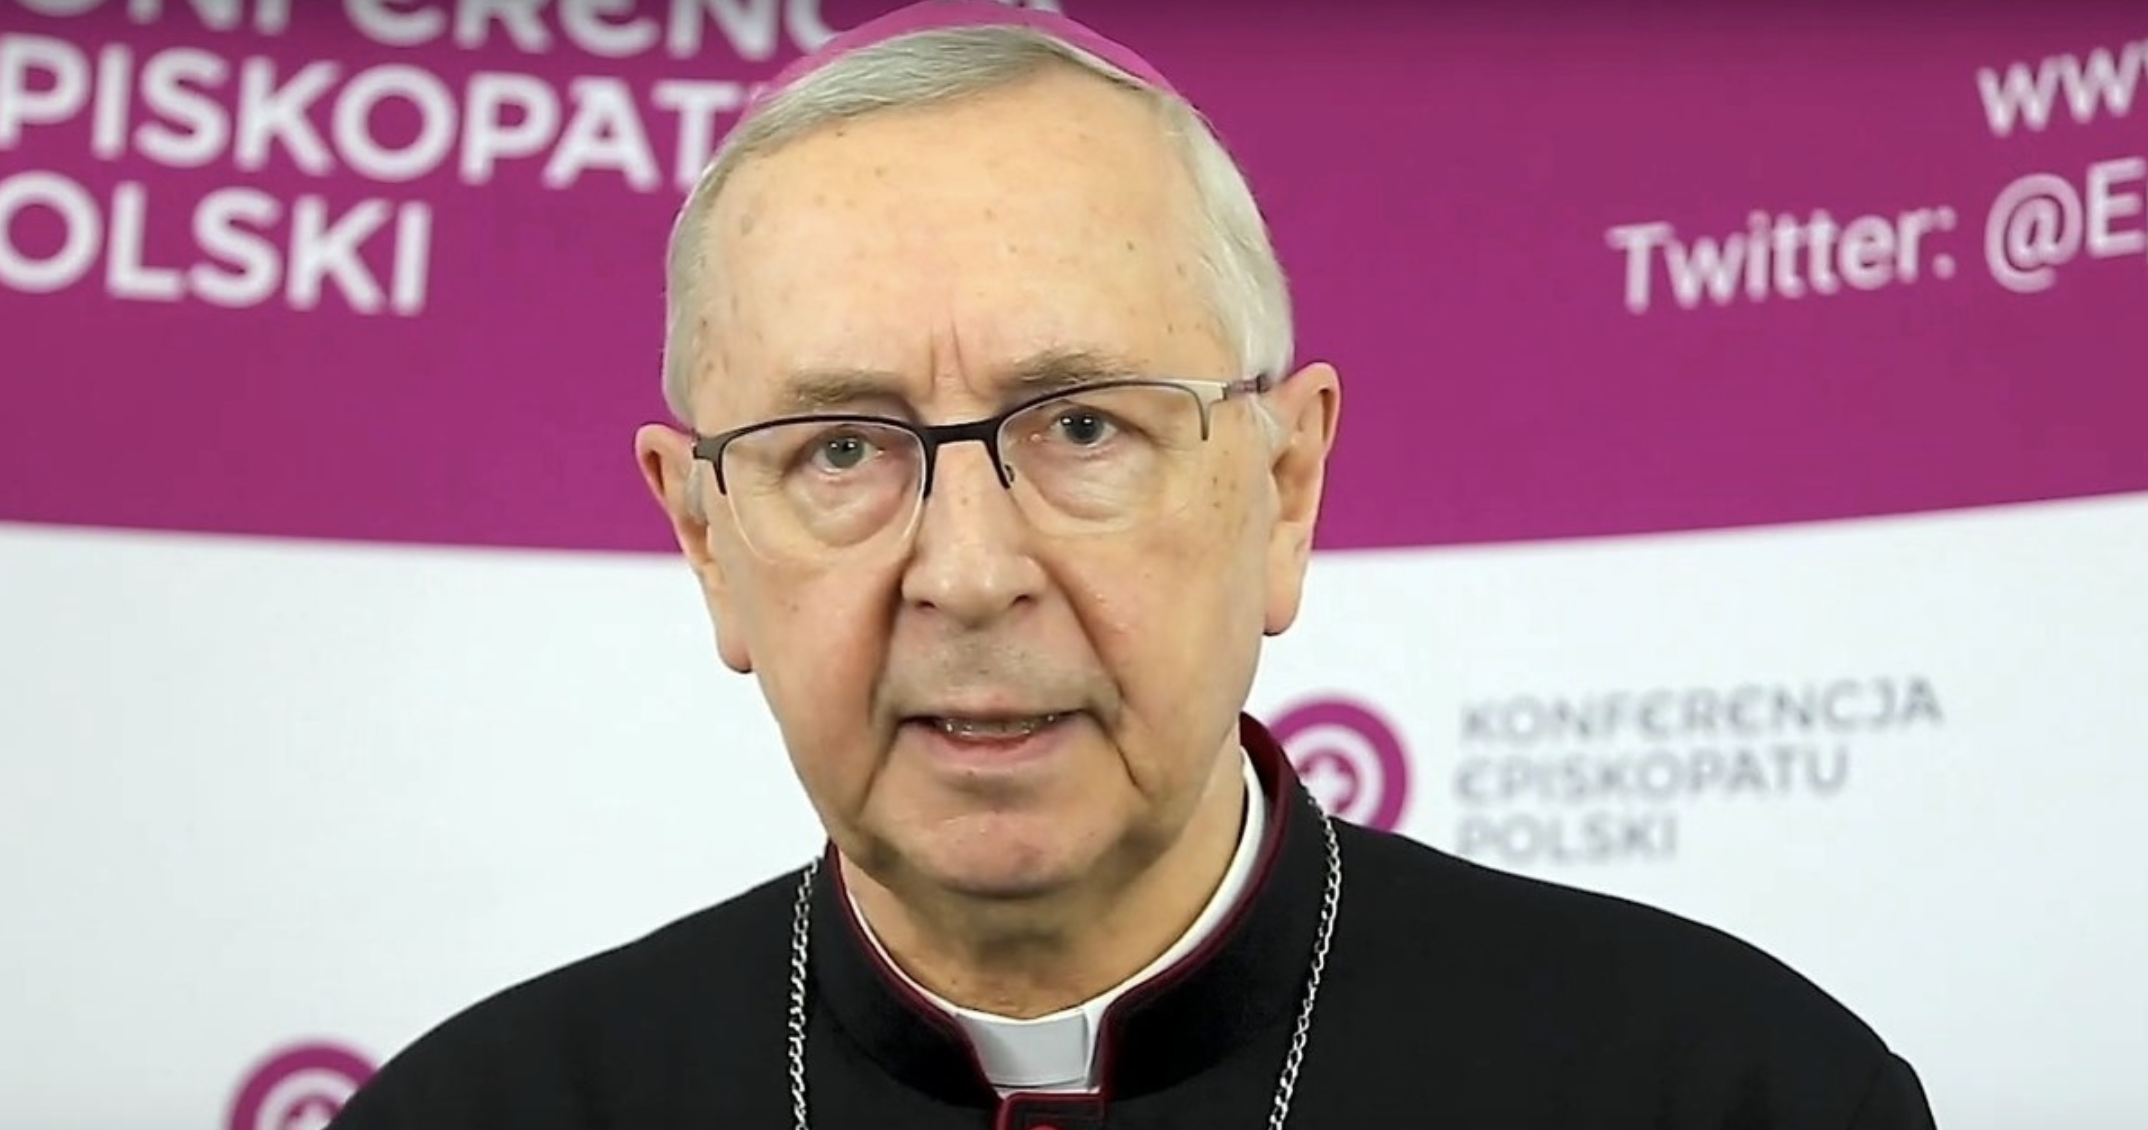 Глава Епископата Польши призвал поляков гостеприимно принимать беженцев из Украины